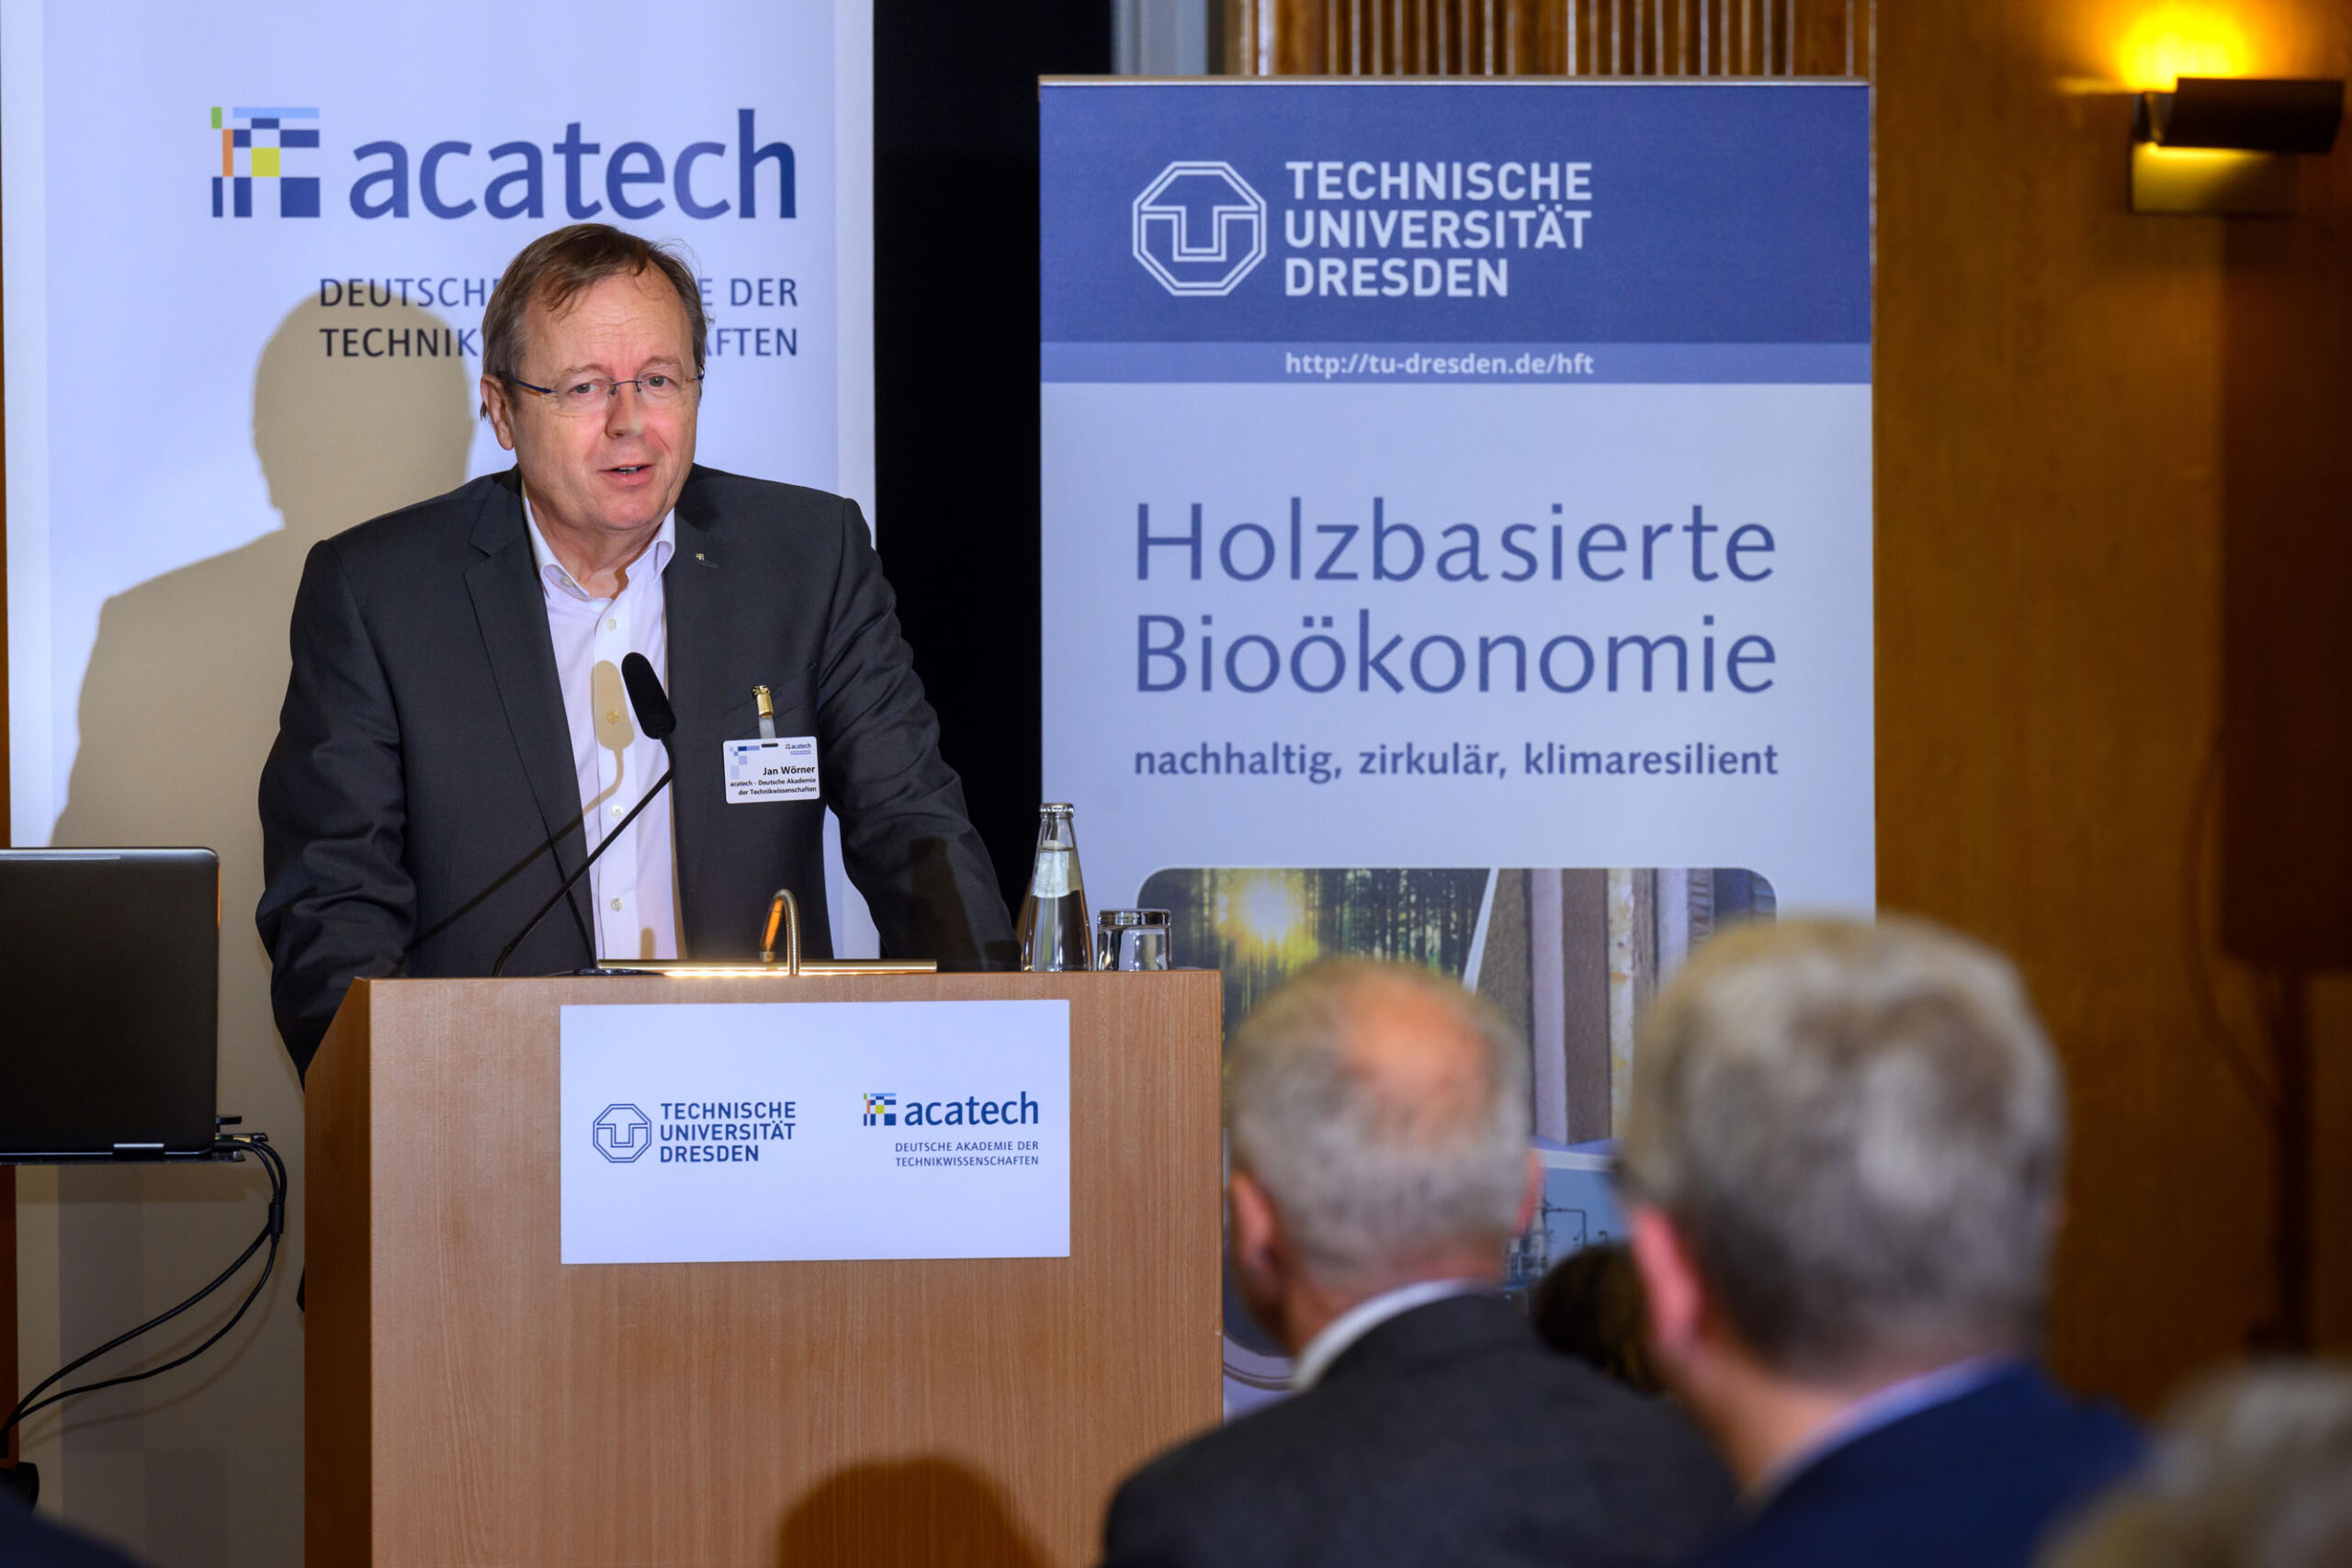 Jan Wörner spricht bei der Veranstaltung zur Veröffentlichung der Publikation zur holzbasierten Bioökonomie.